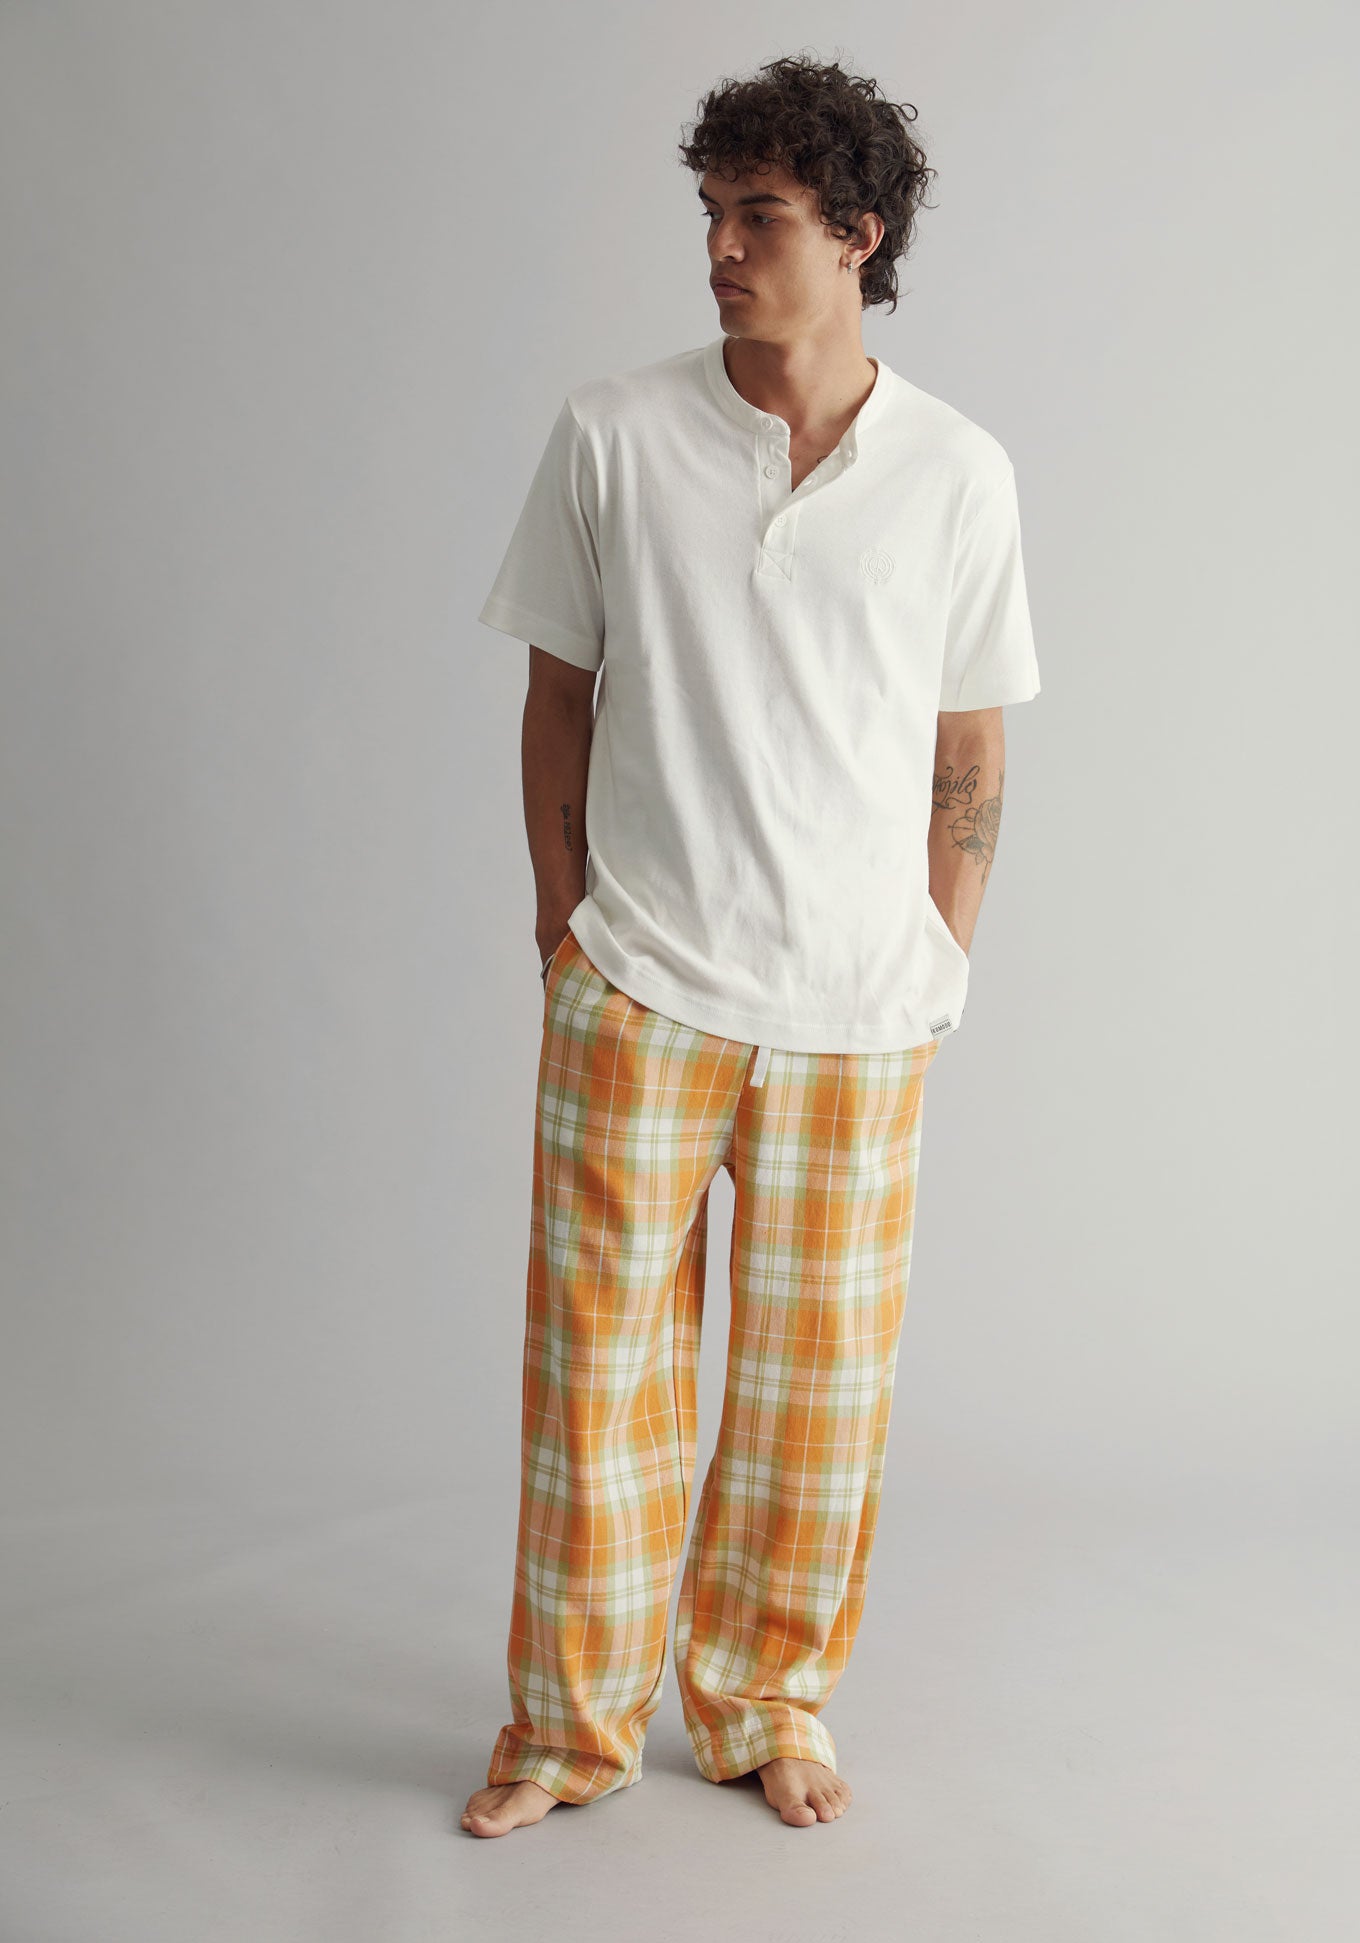 JIM JAM - Men’s GOTS Organic Cotton Pyjama Set, Medium